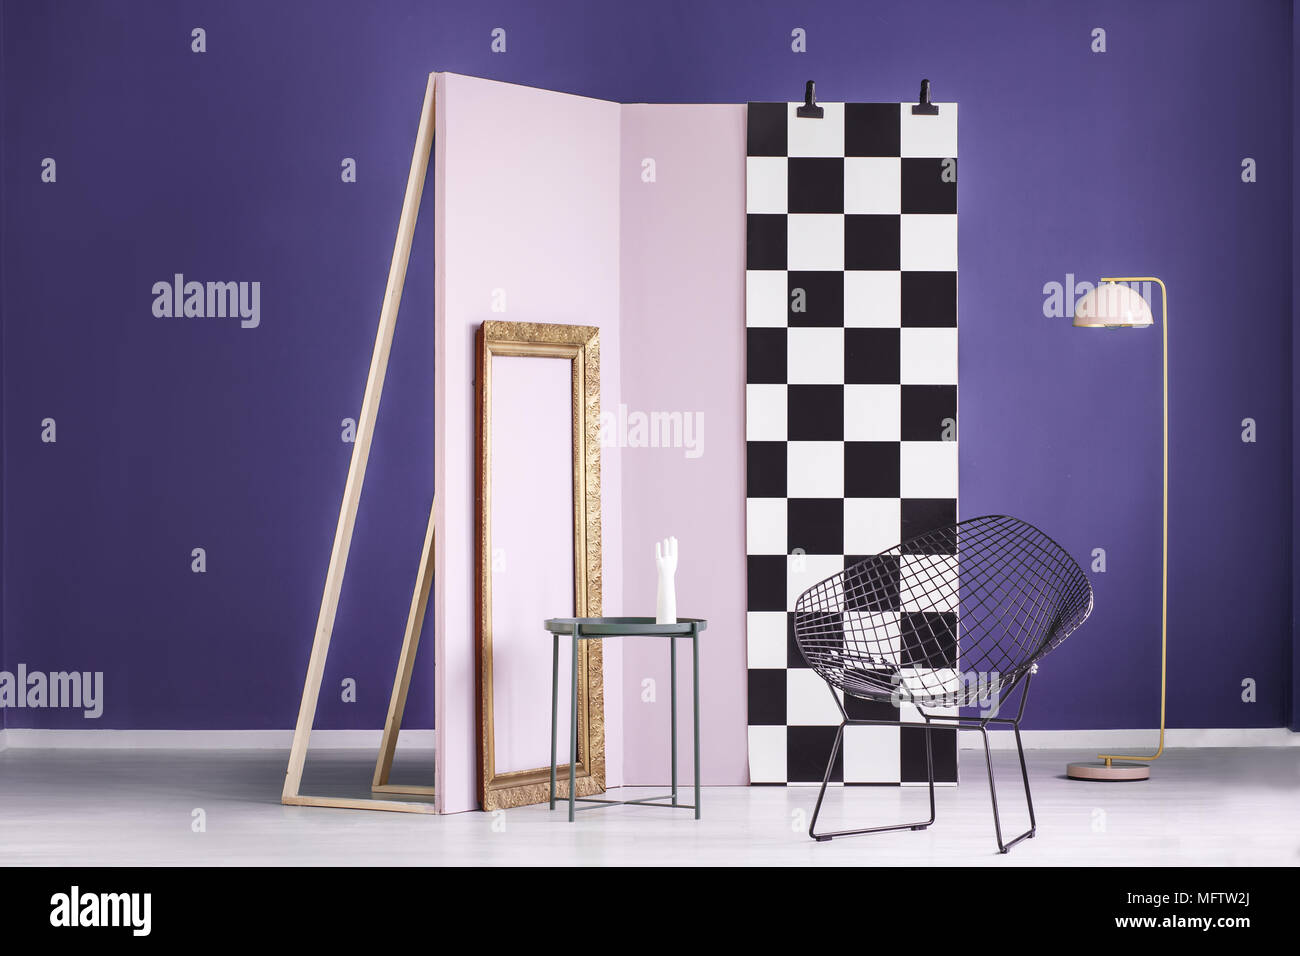 Photo réelle d'une installation artistique dans un cadre doré à l'intérieur violet, rose et noir, mur en métal chaises Banque D'Images